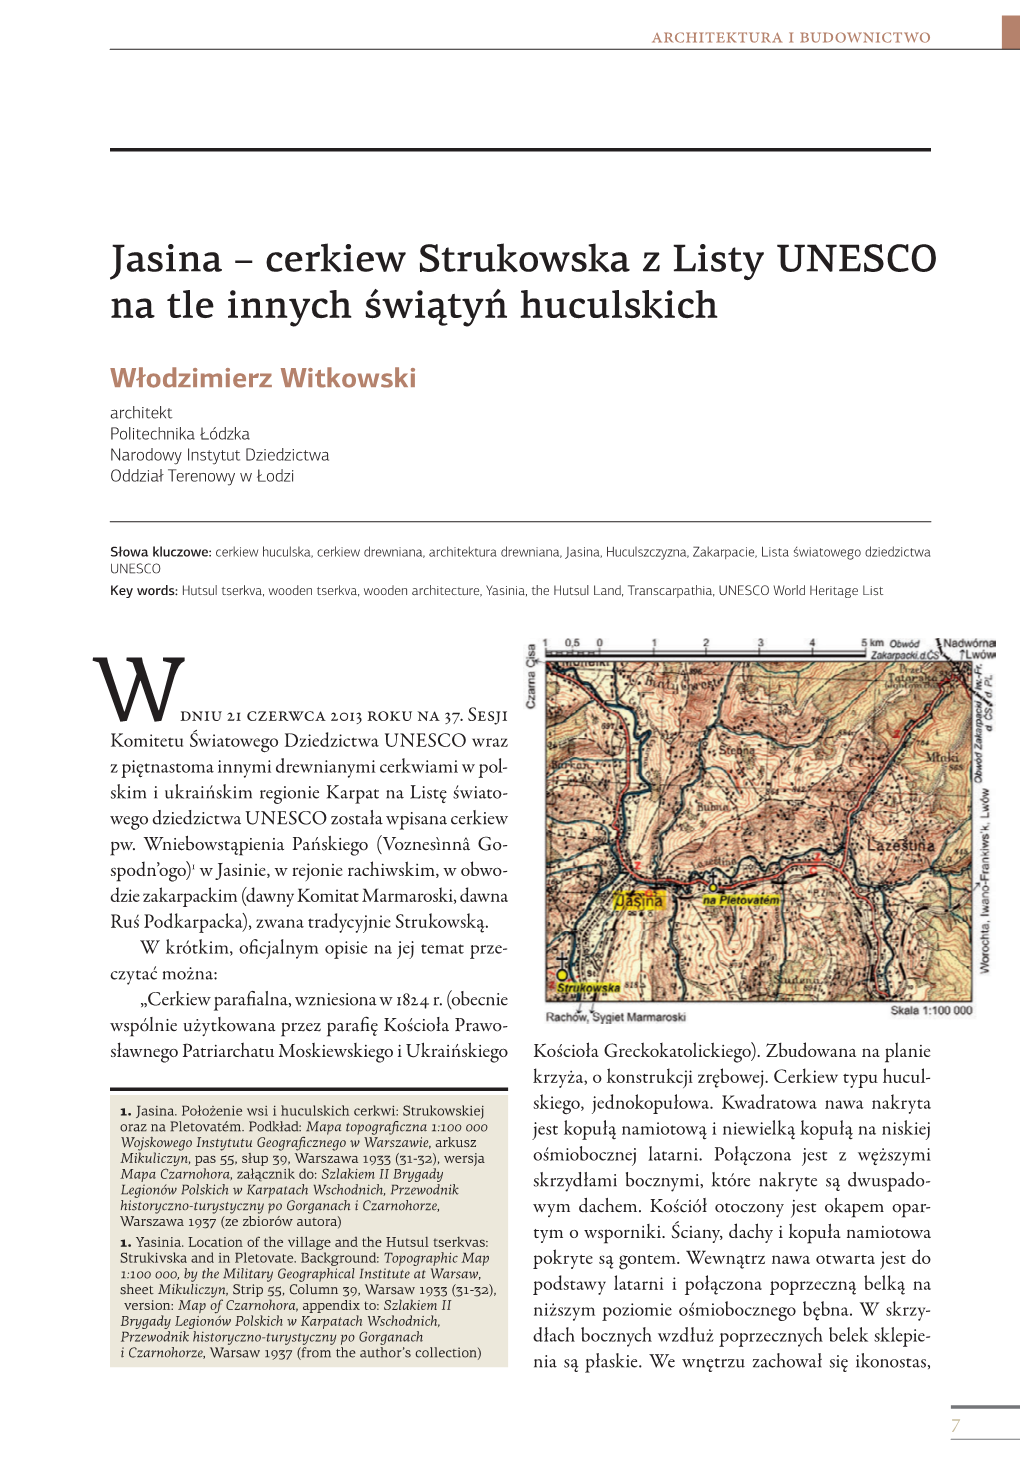 Jasina – Cerkiew Strukowska Z Listy UNESCO Na Tle Innych Świątyń Huculskich